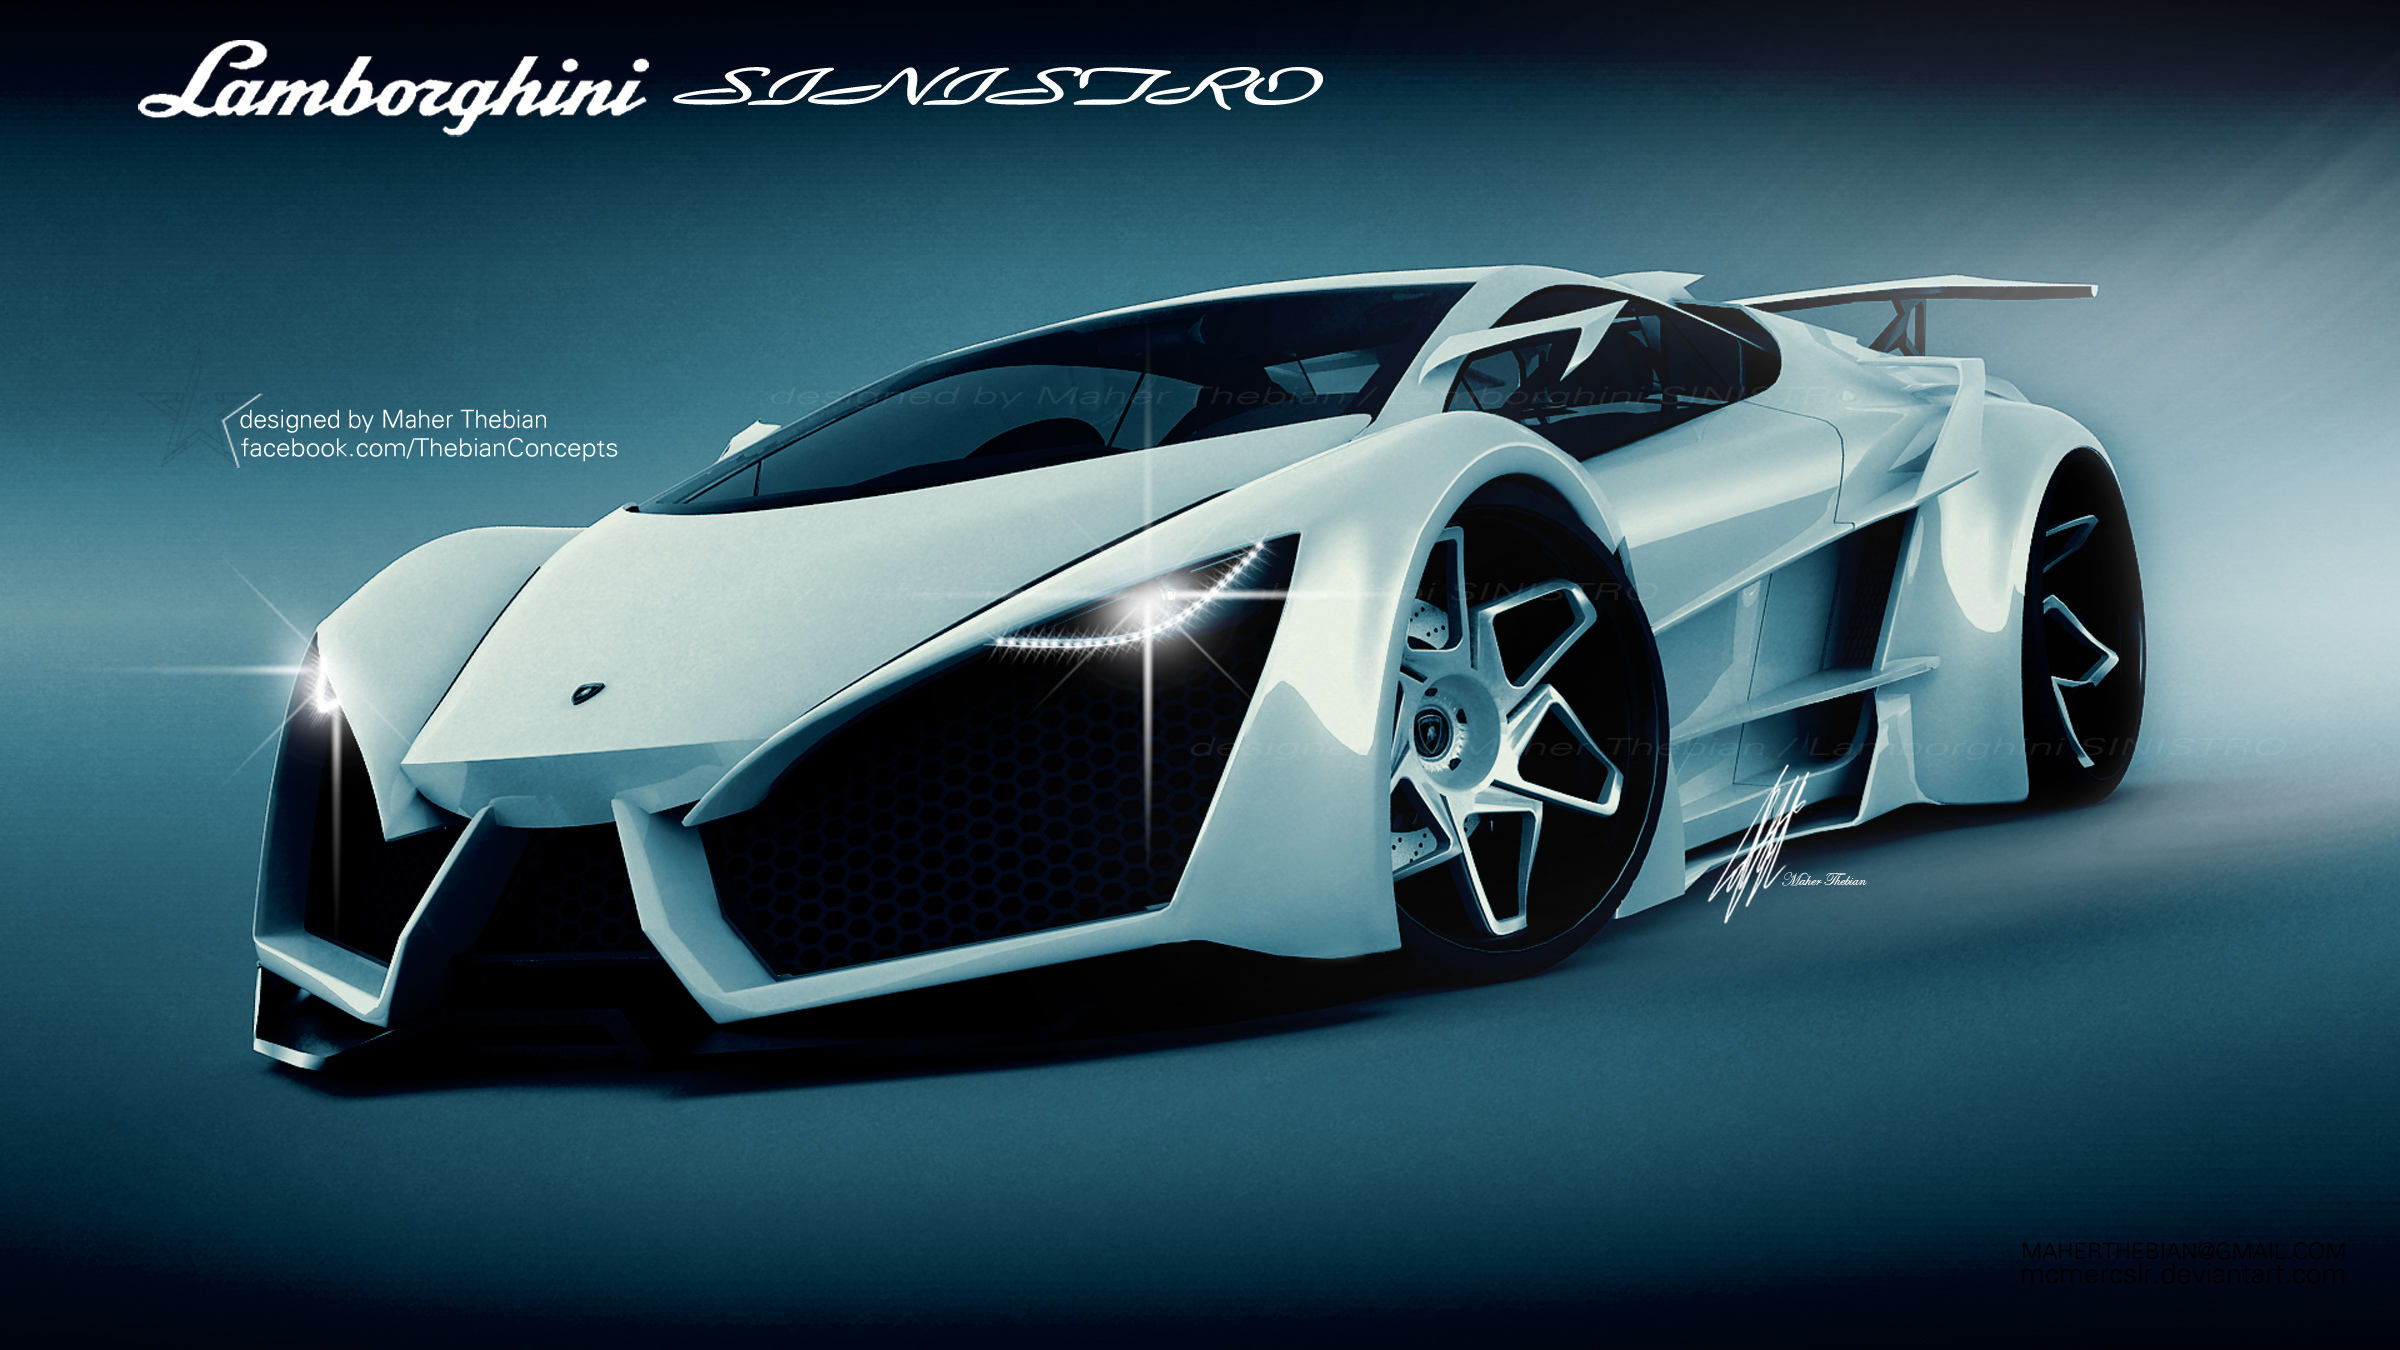 Lamborghini Sinistro Wallpaper, Widescreen Hd Car Image ...